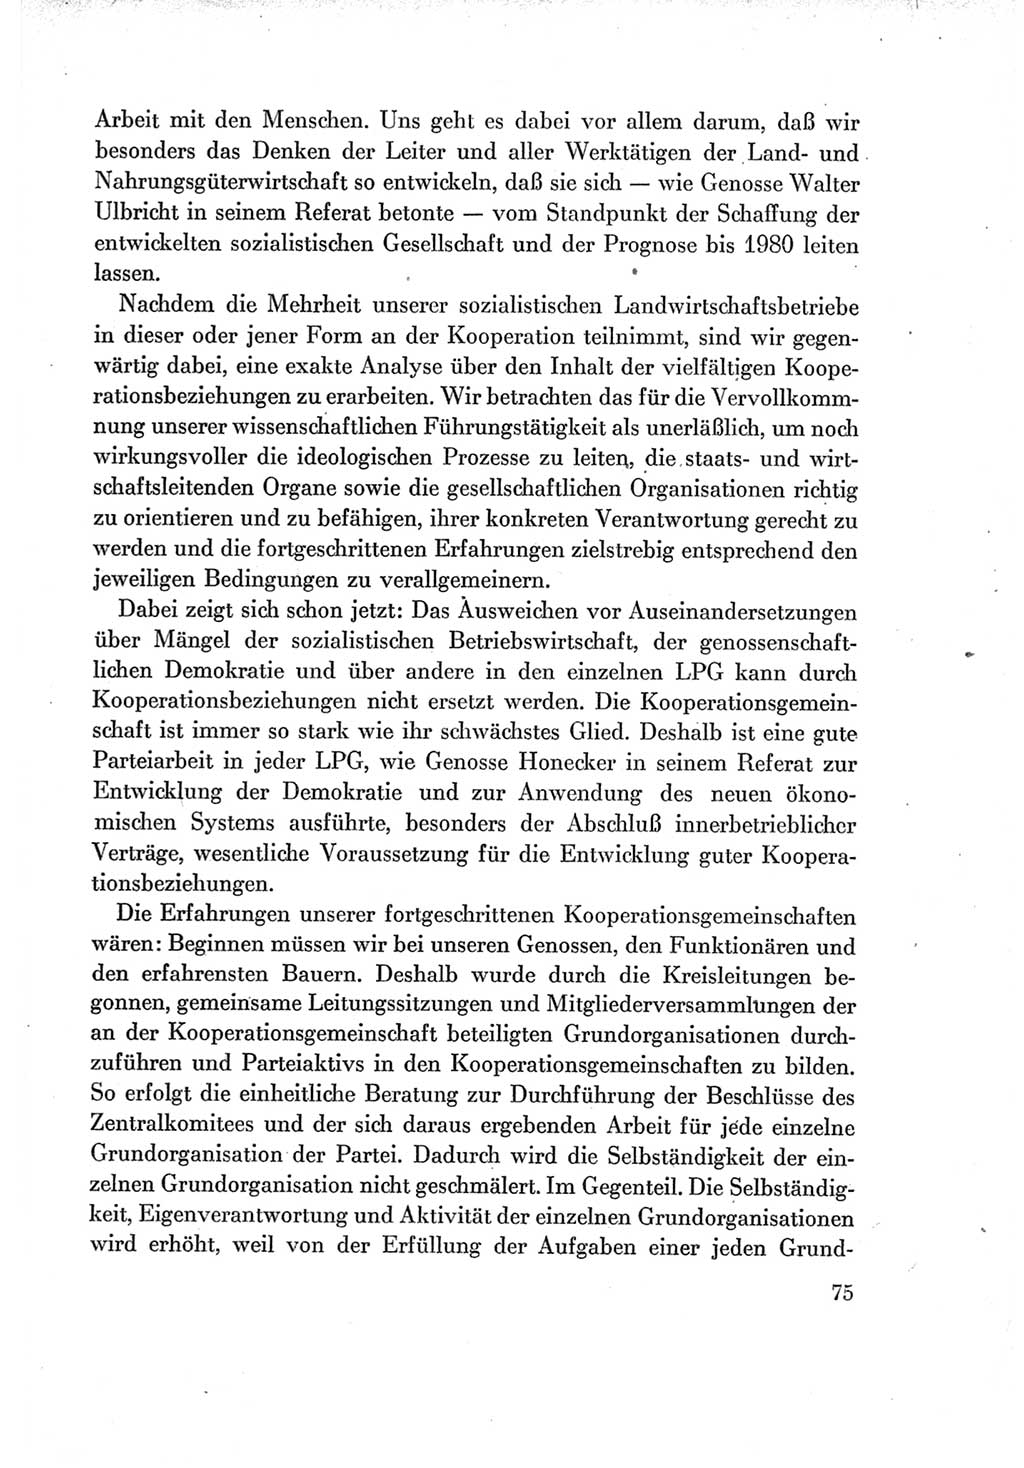 Protokoll der Verhandlungen des Ⅶ. Parteitages der Sozialistischen Einheitspartei Deutschlands (SED) [Deutsche Demokratische Republik (DDR)] 1967, Band Ⅱ, Seite 75 (Prot. Verh. Ⅶ. PT SED DDR 1967, Bd. Ⅱ, S. 75)